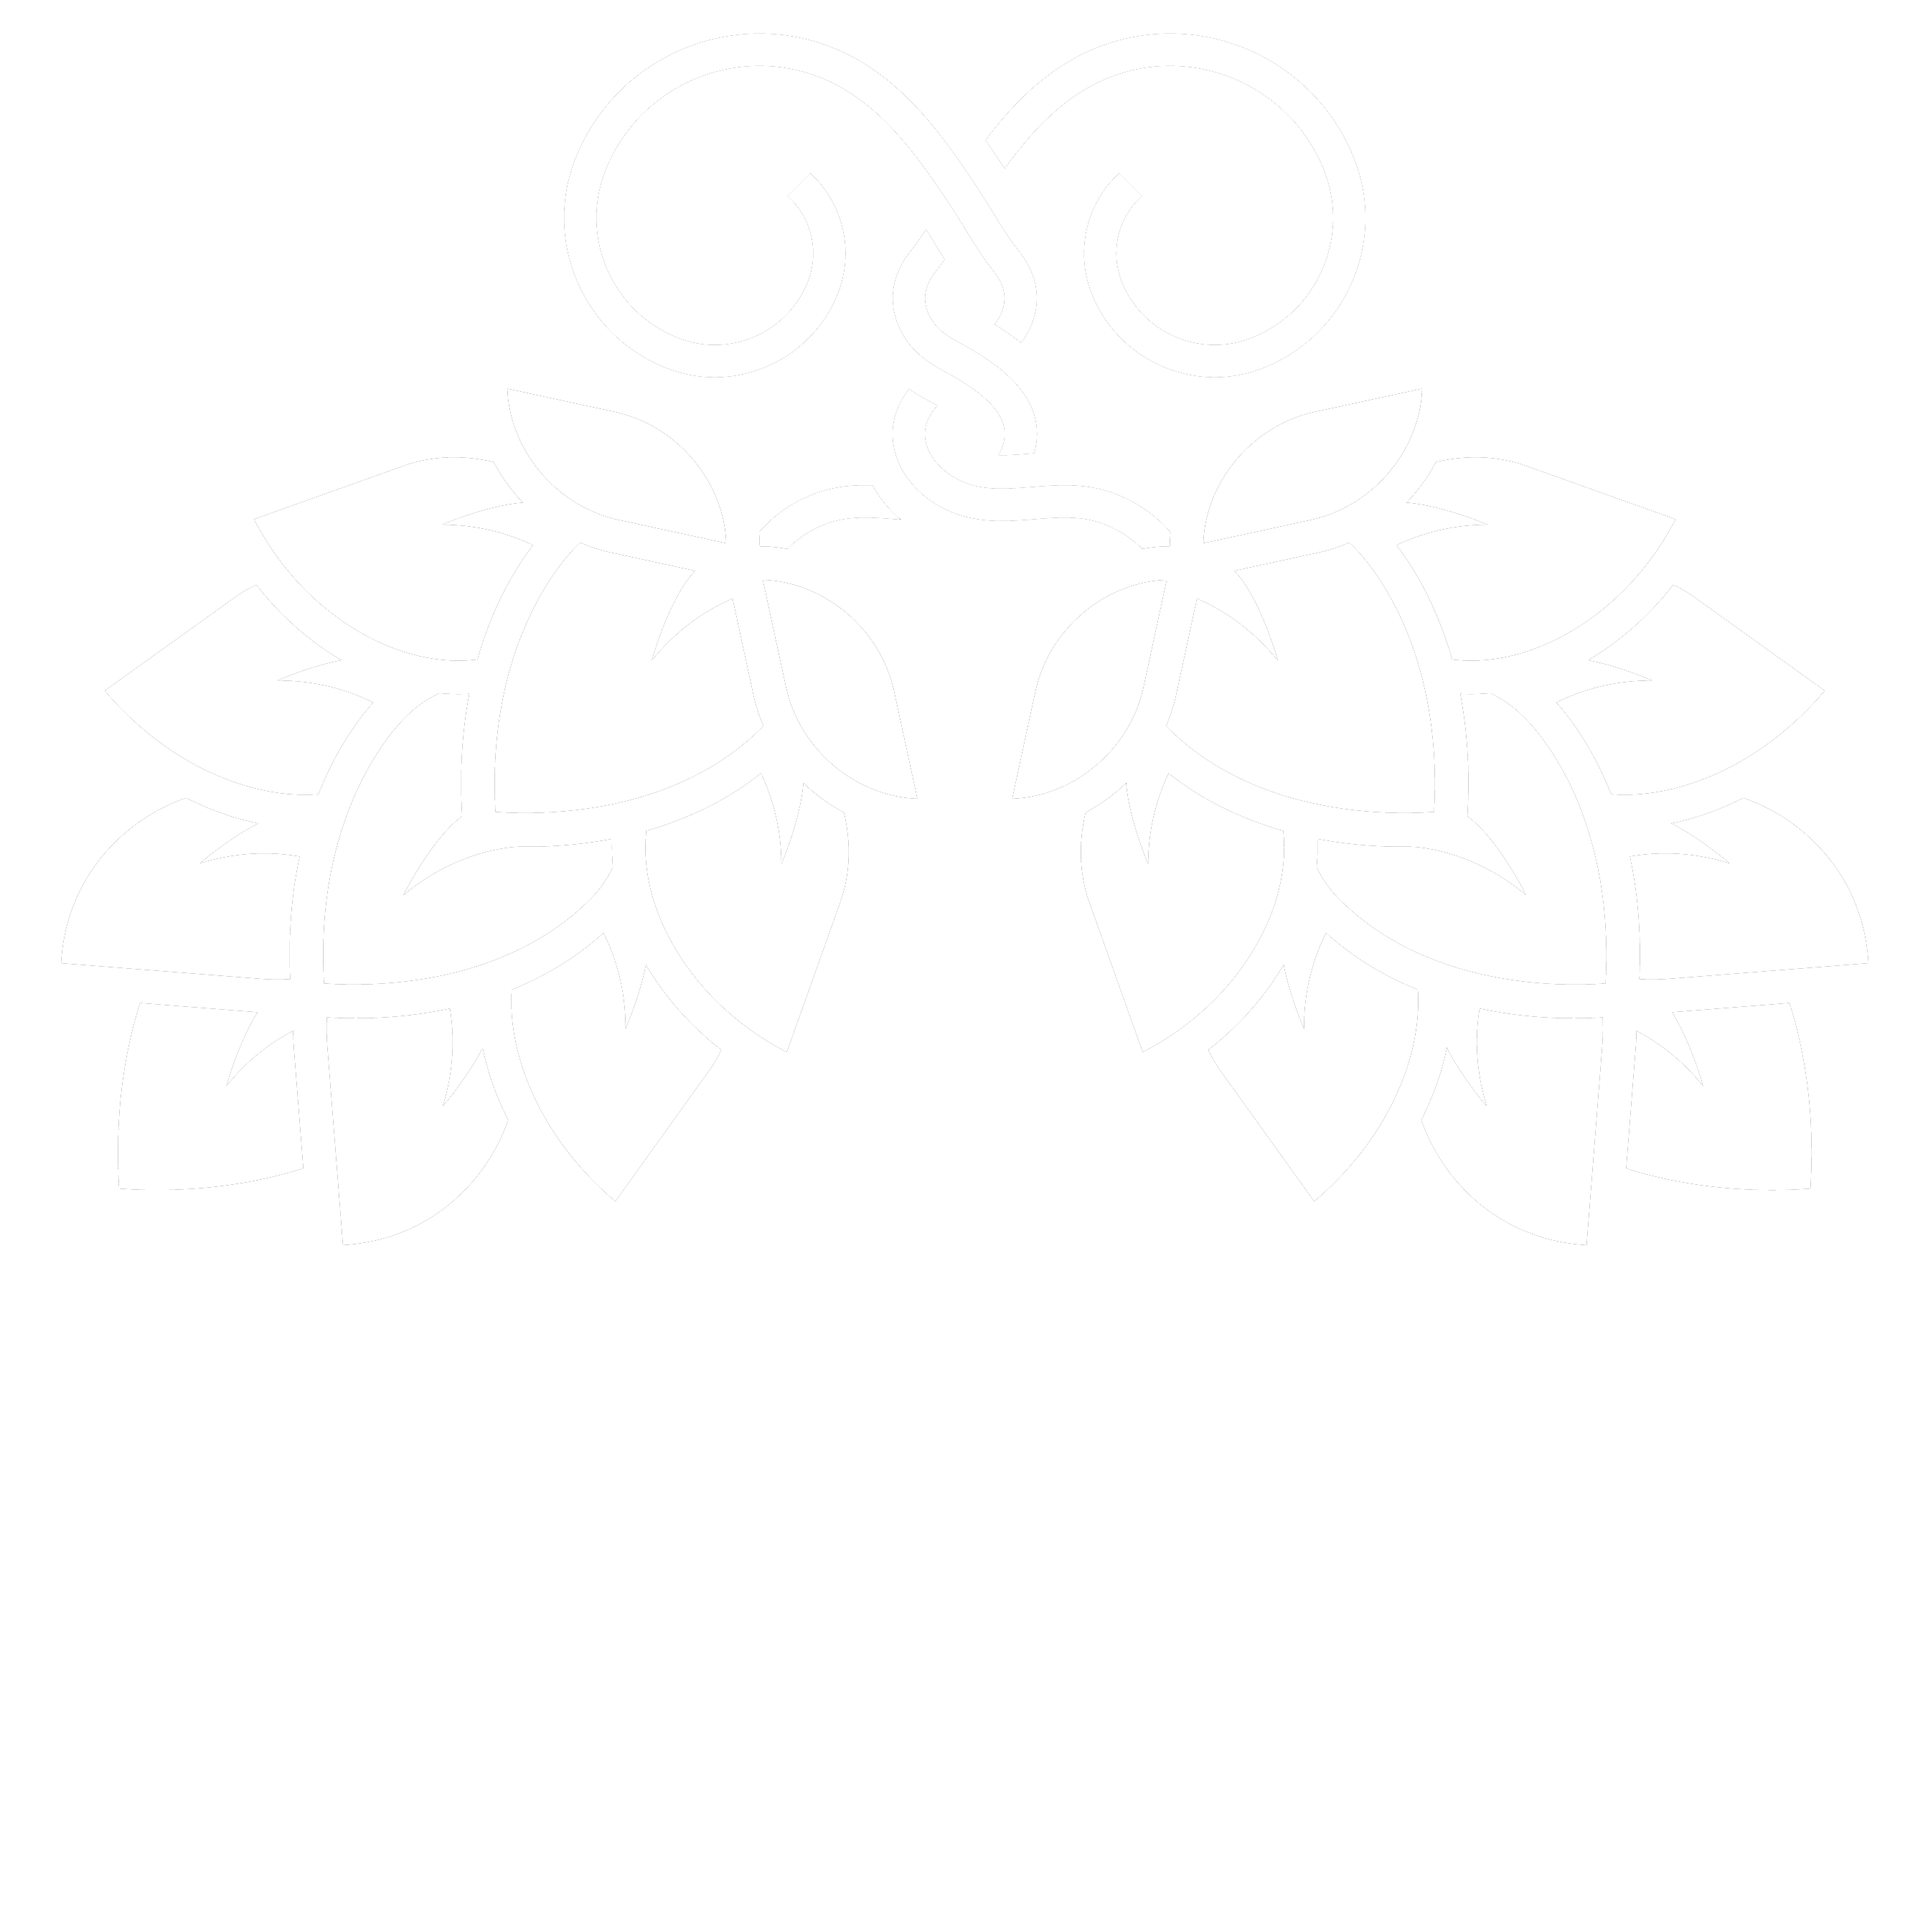 Van Hoppen